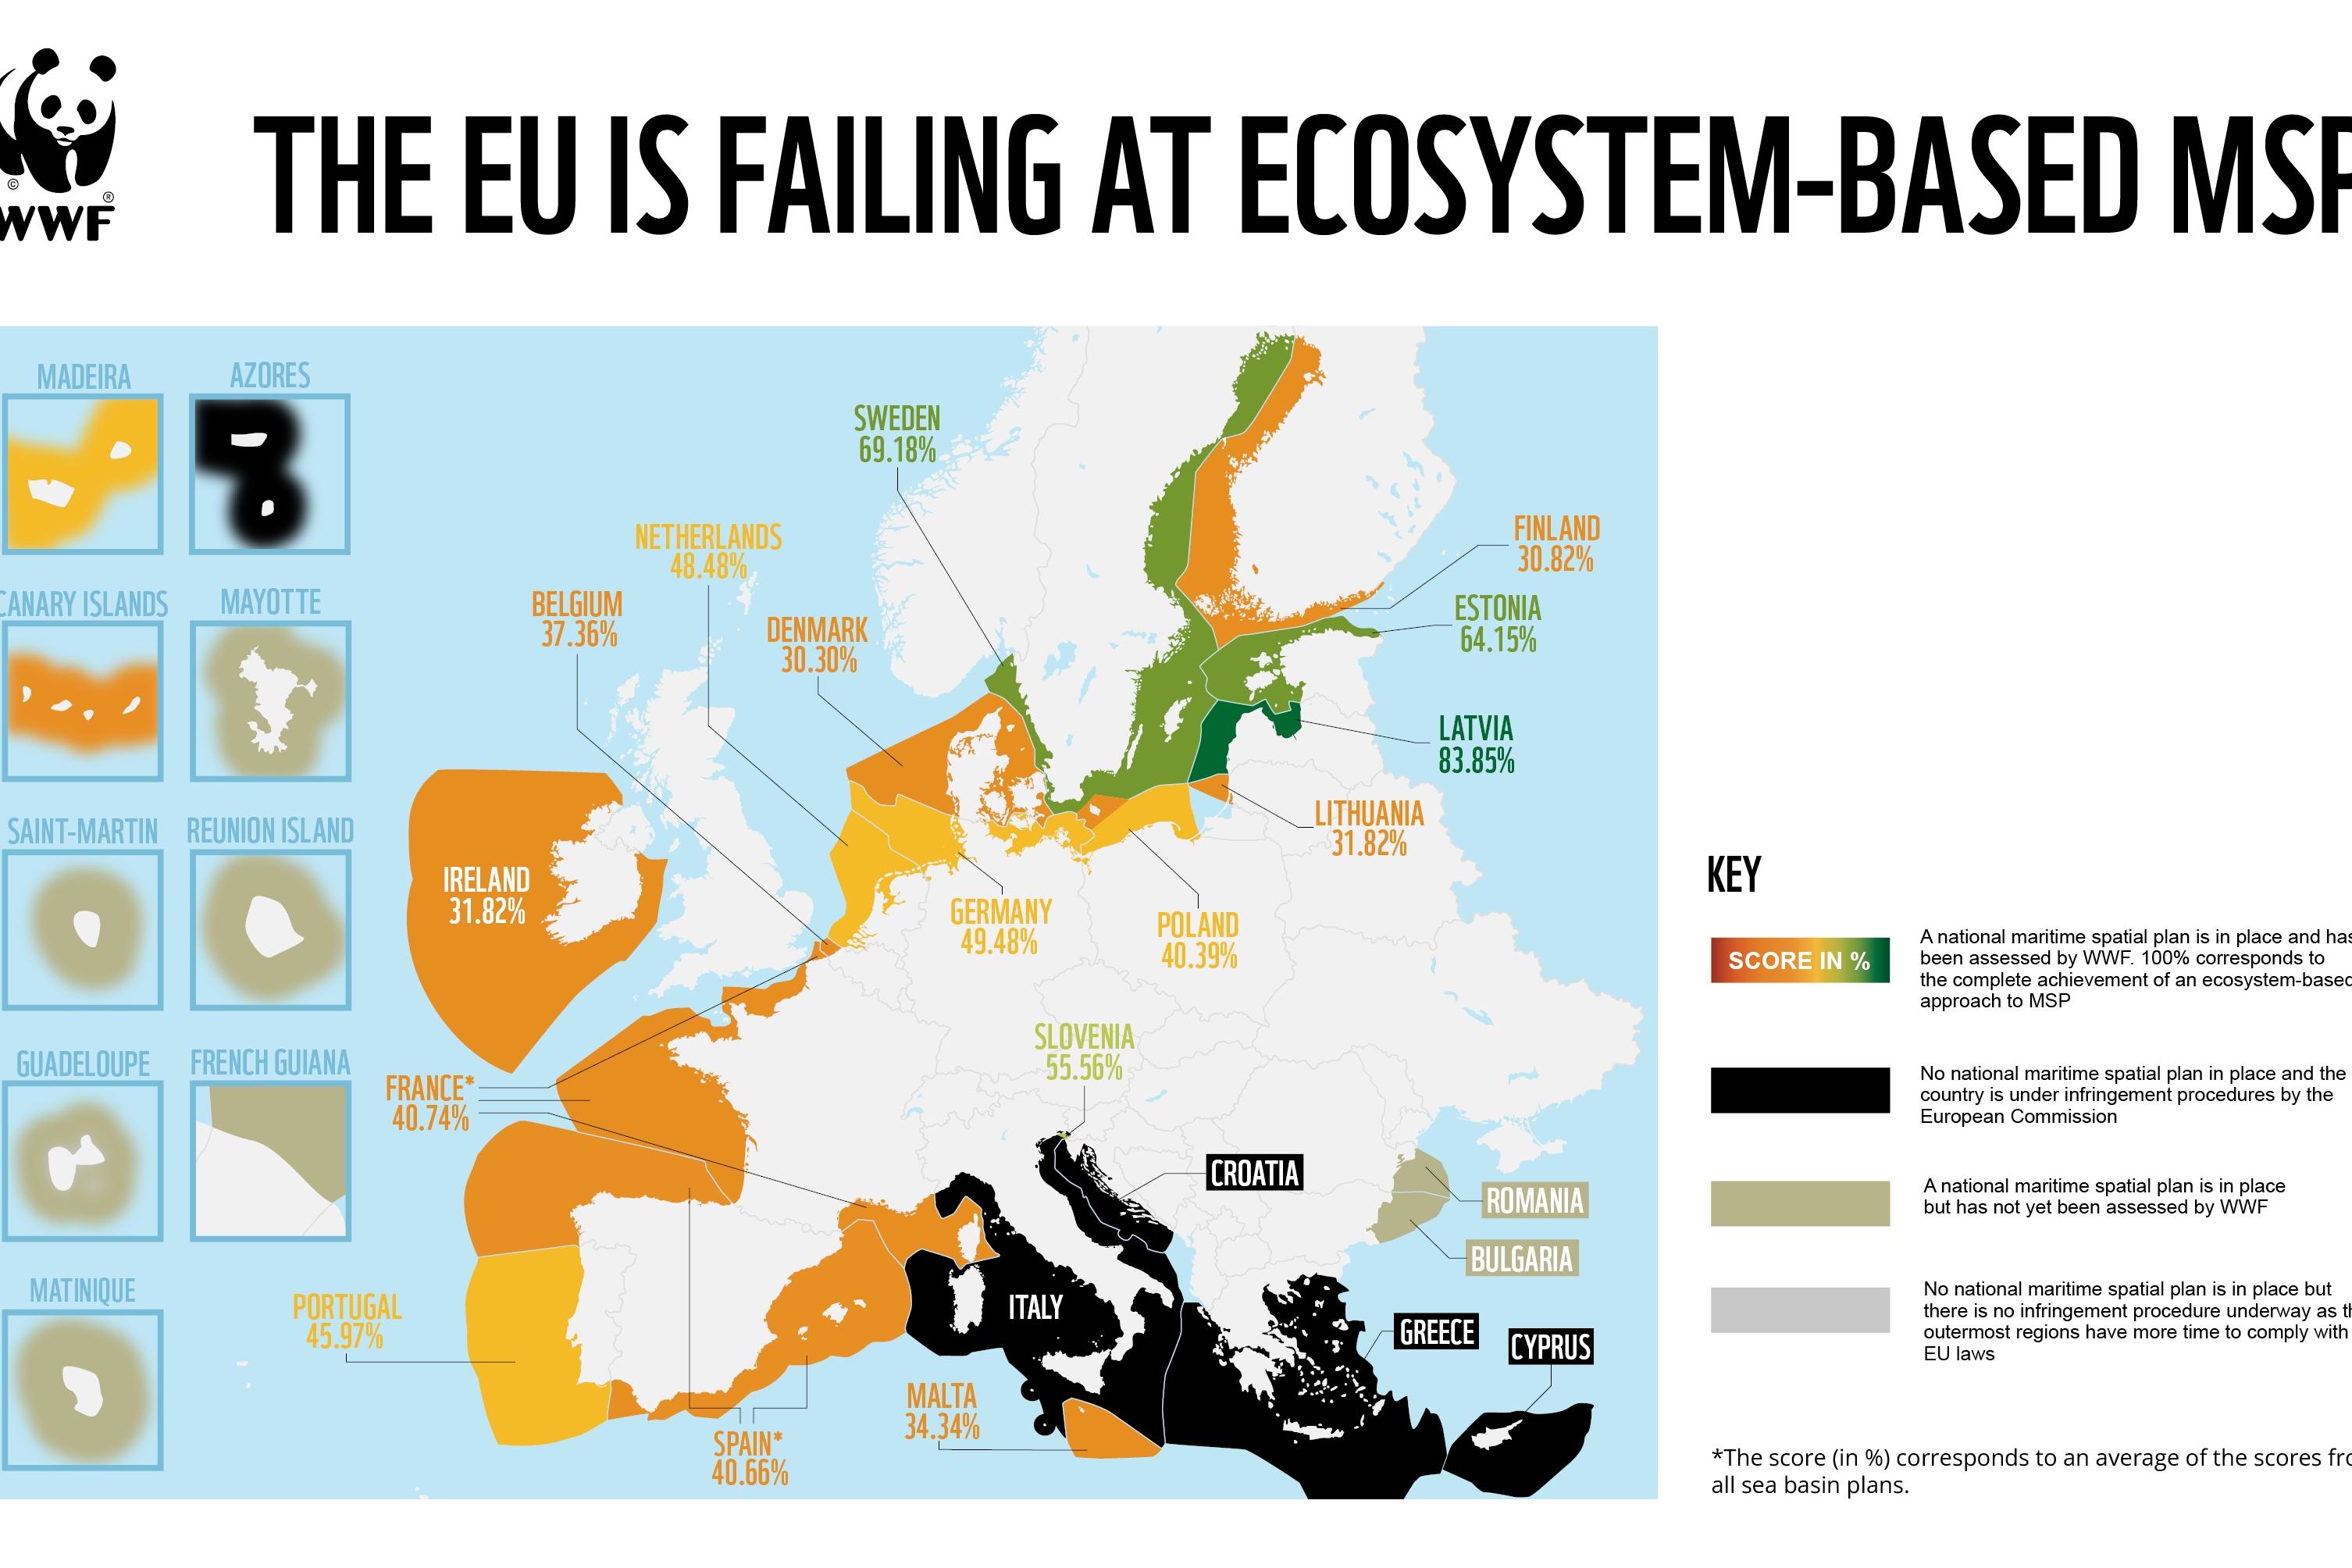 Grafische Darstellung des WWF in unterschiedlichen Farben, in welchen EU-Mitgliedsländern welche Meeresschutzgebiete schon durch Raumplanung erfasst sind